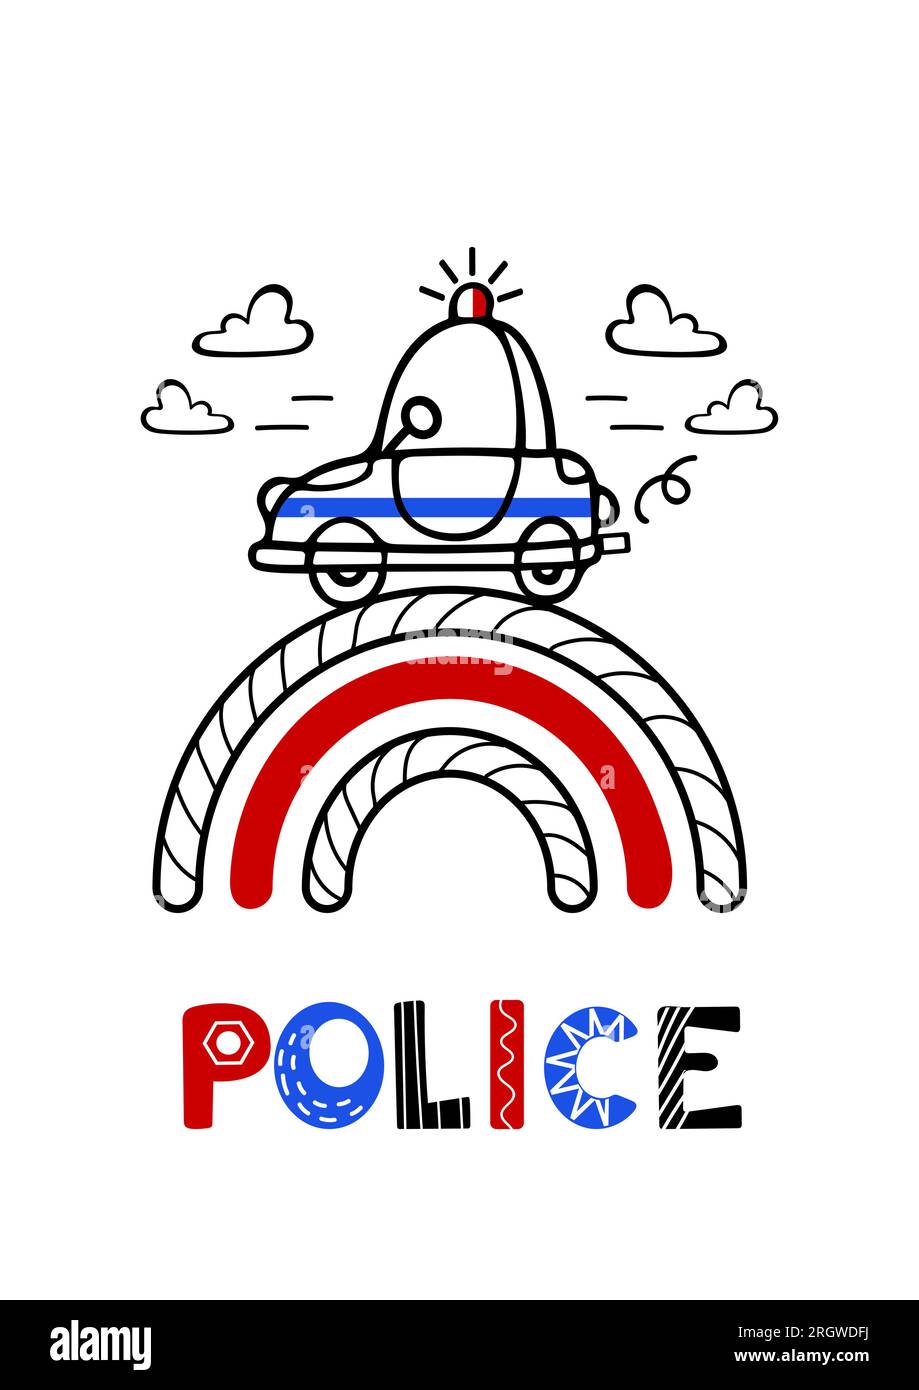 Der Polizeiwagen hat es eilig zu helfen. Süße Vektorgrafik für Kinder im skandinavischen Stil. Schriftzeichen. Handgezeichnet, rot-blau und schwarz. Fo Stock Vektor